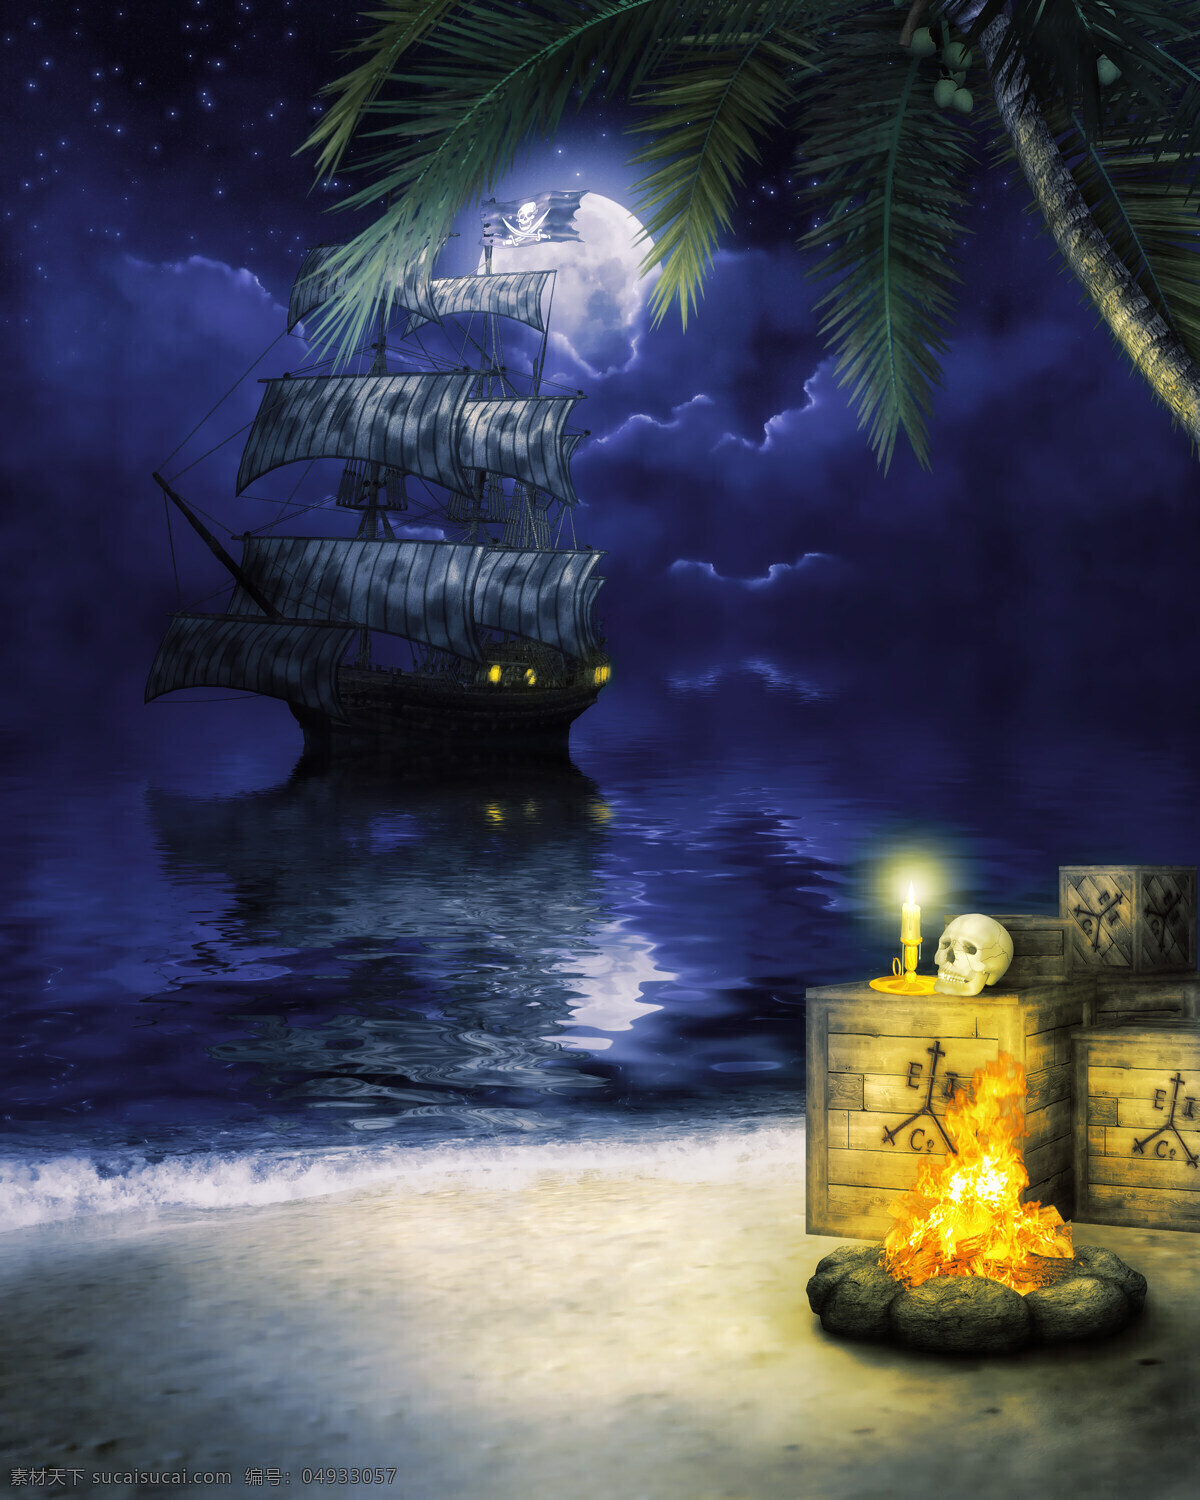 海盗船 沙滩风景 海滩风景 美丽风景 椰树 椰子树 骷髅 大海图片 风景图片